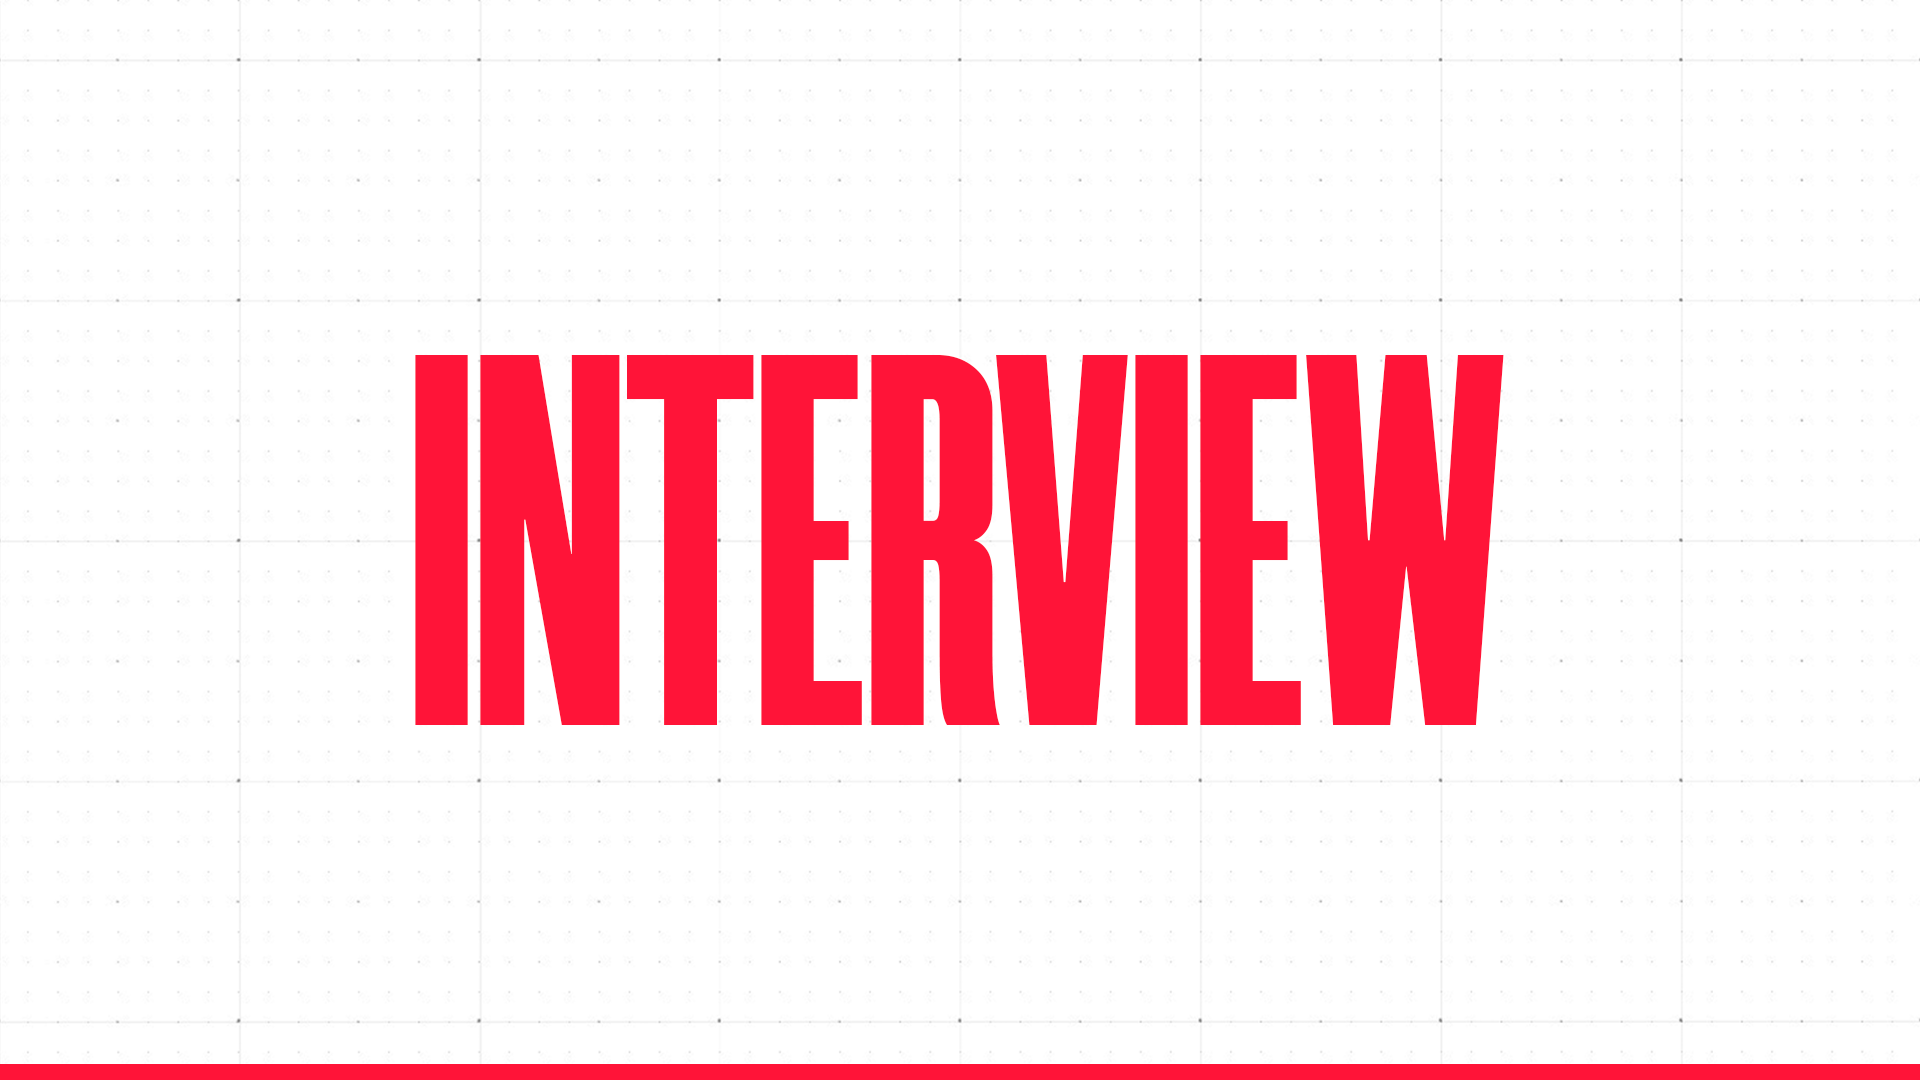 Interview